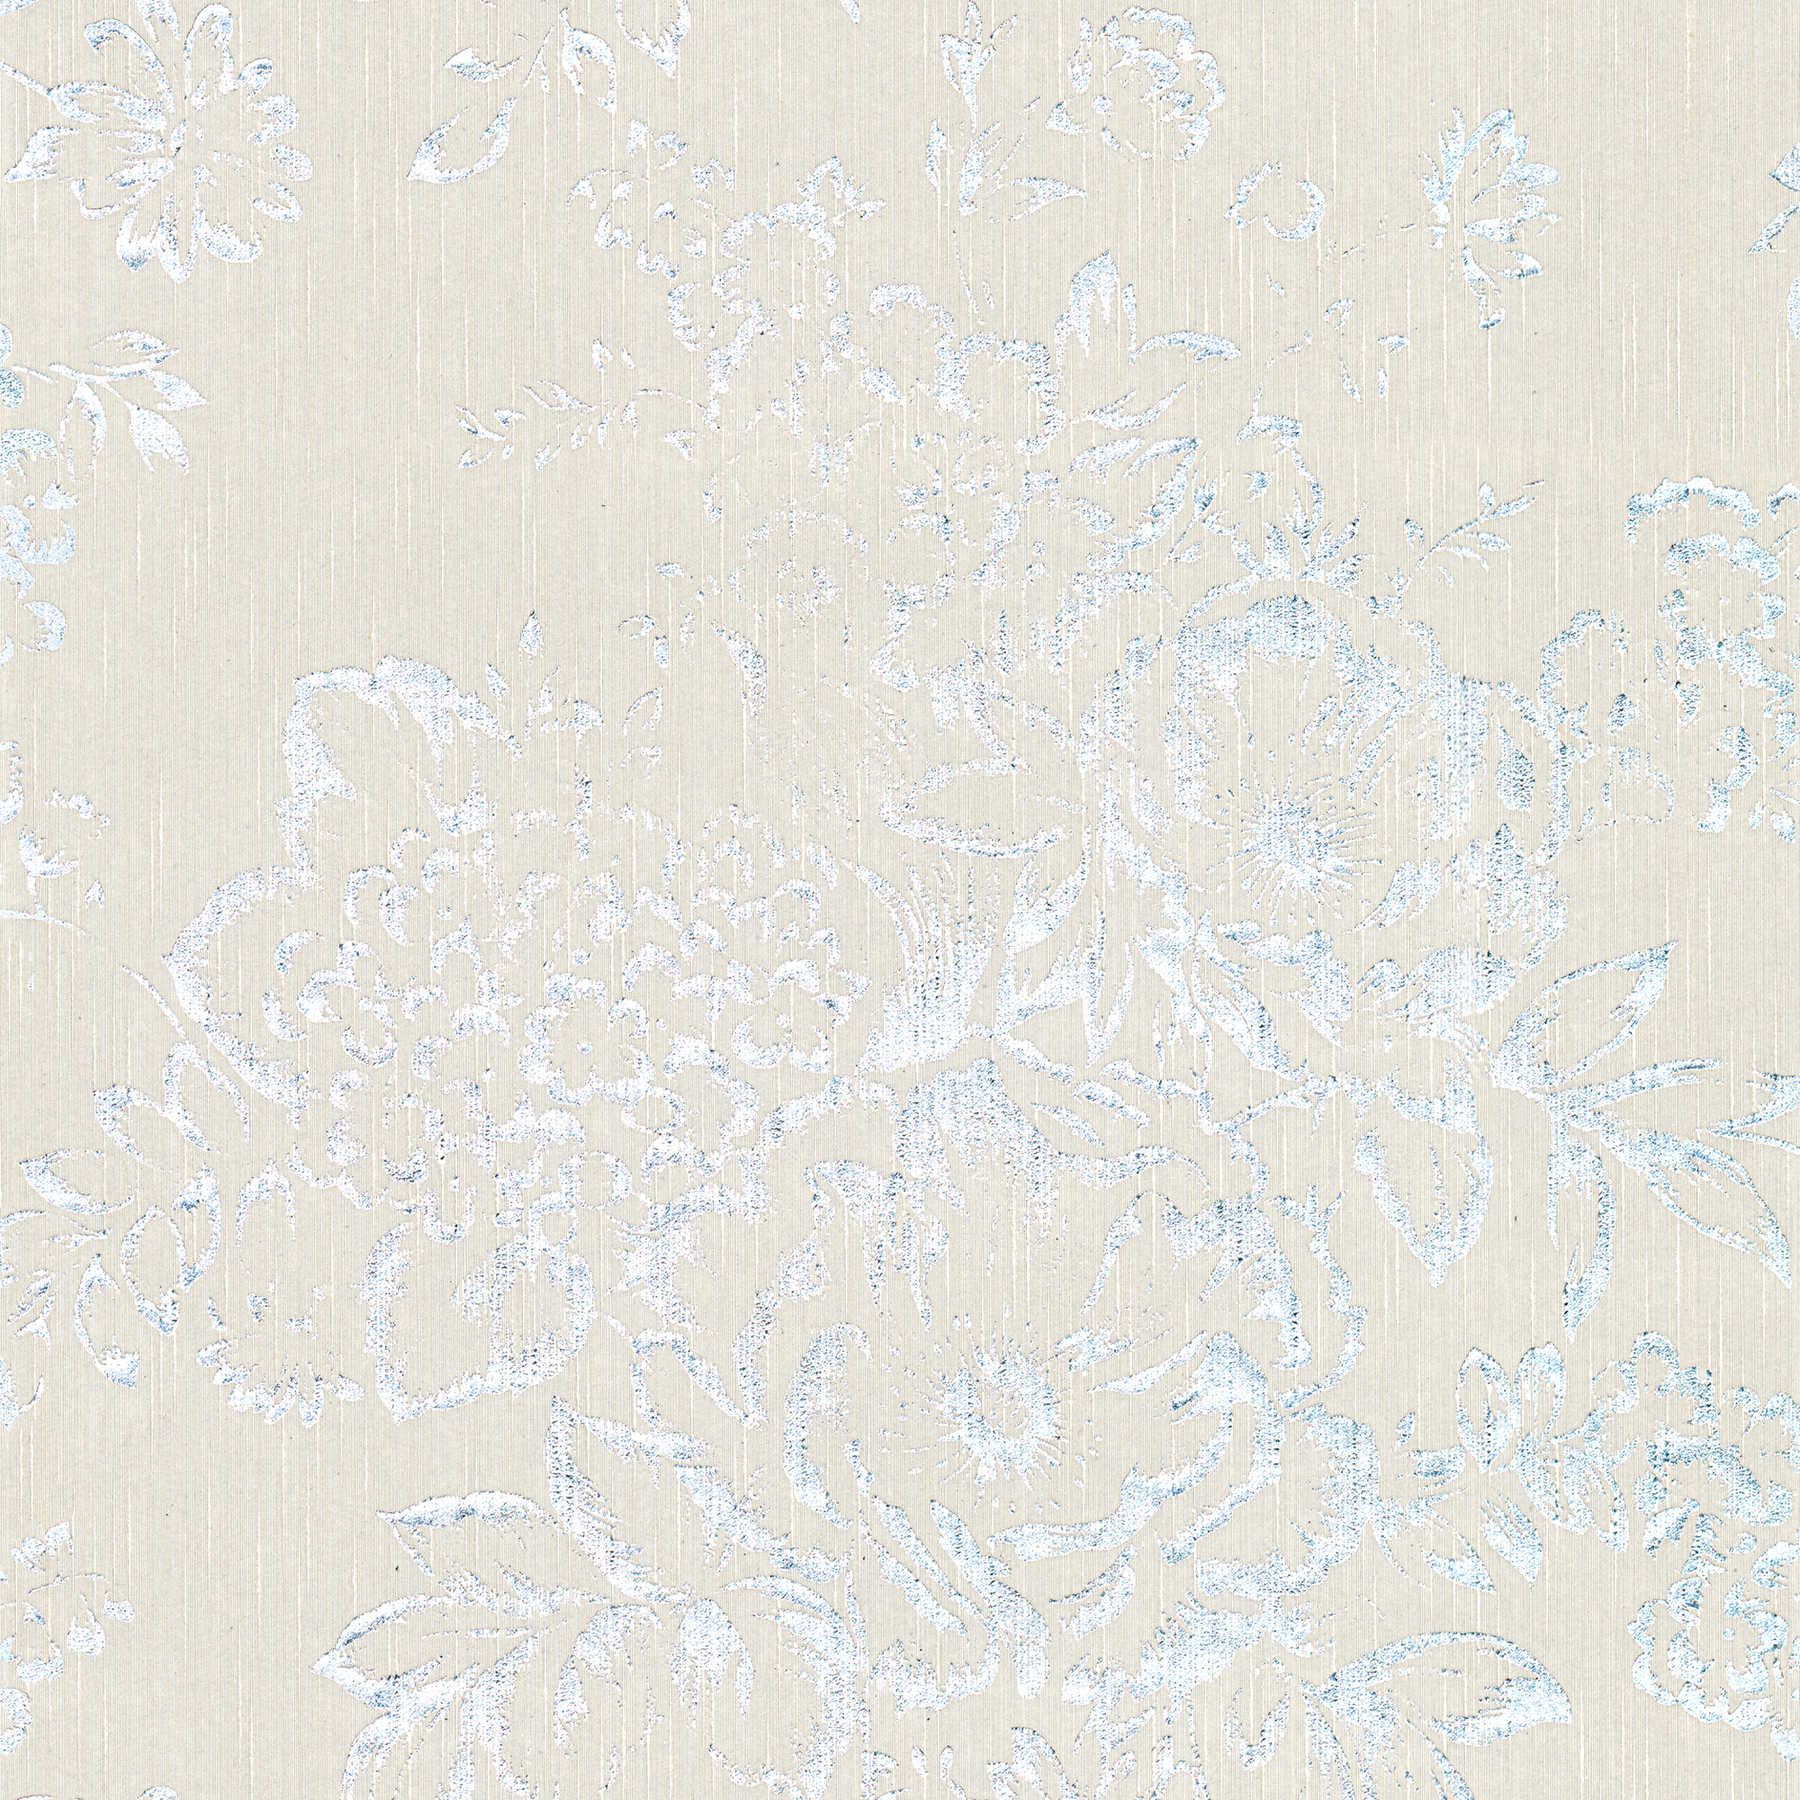 Strukturtapete mit silbernem Blütenmuster – Silber, Grau
